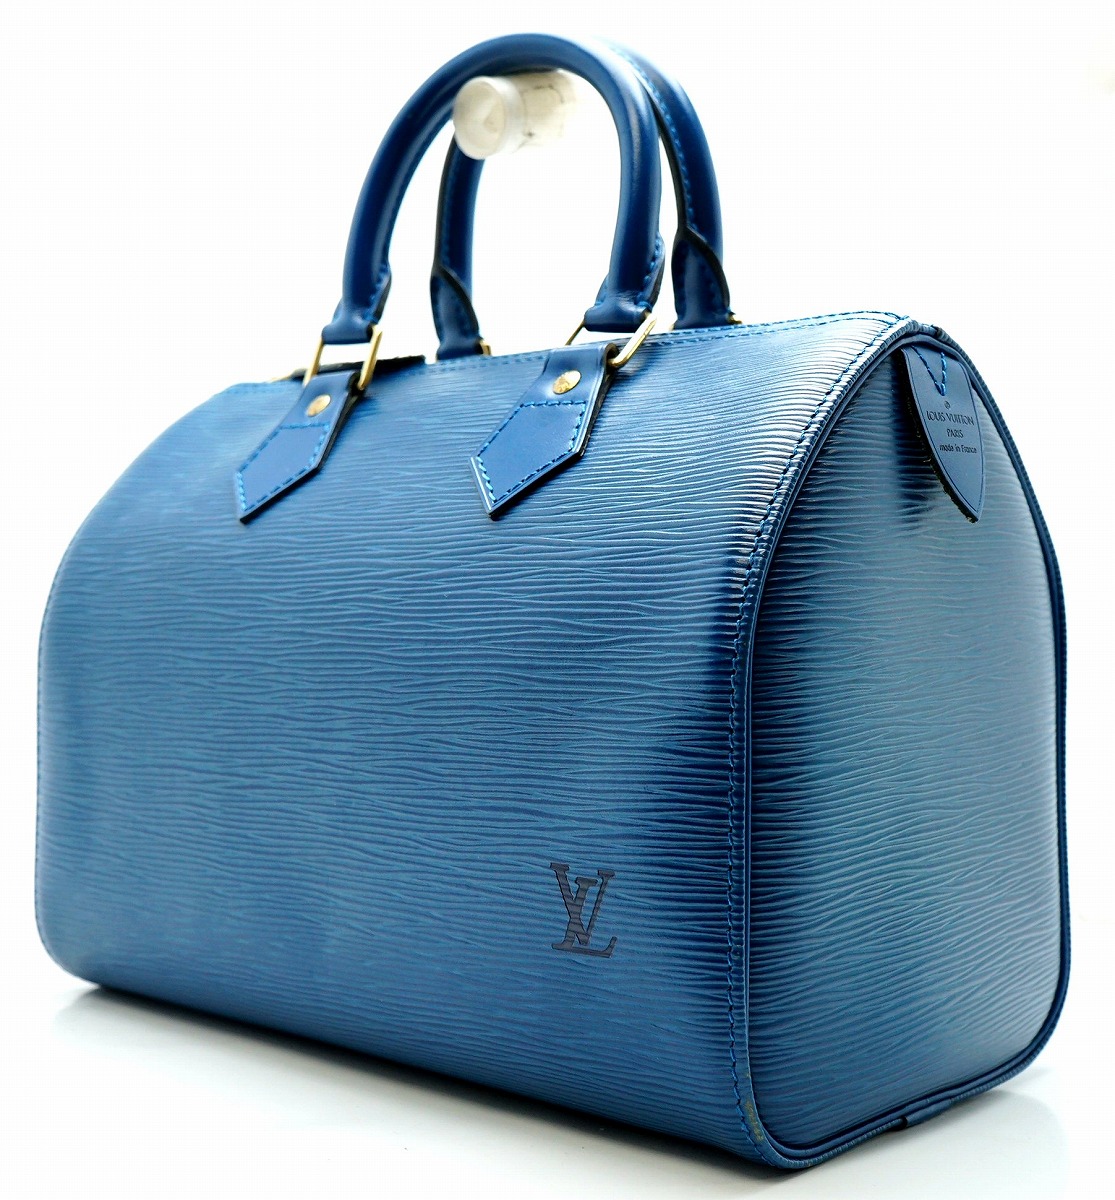 ファッション通販 ルイヴィトン バック バッグ ブルー スピーディー25 エピ M43015 ハンドバッグ